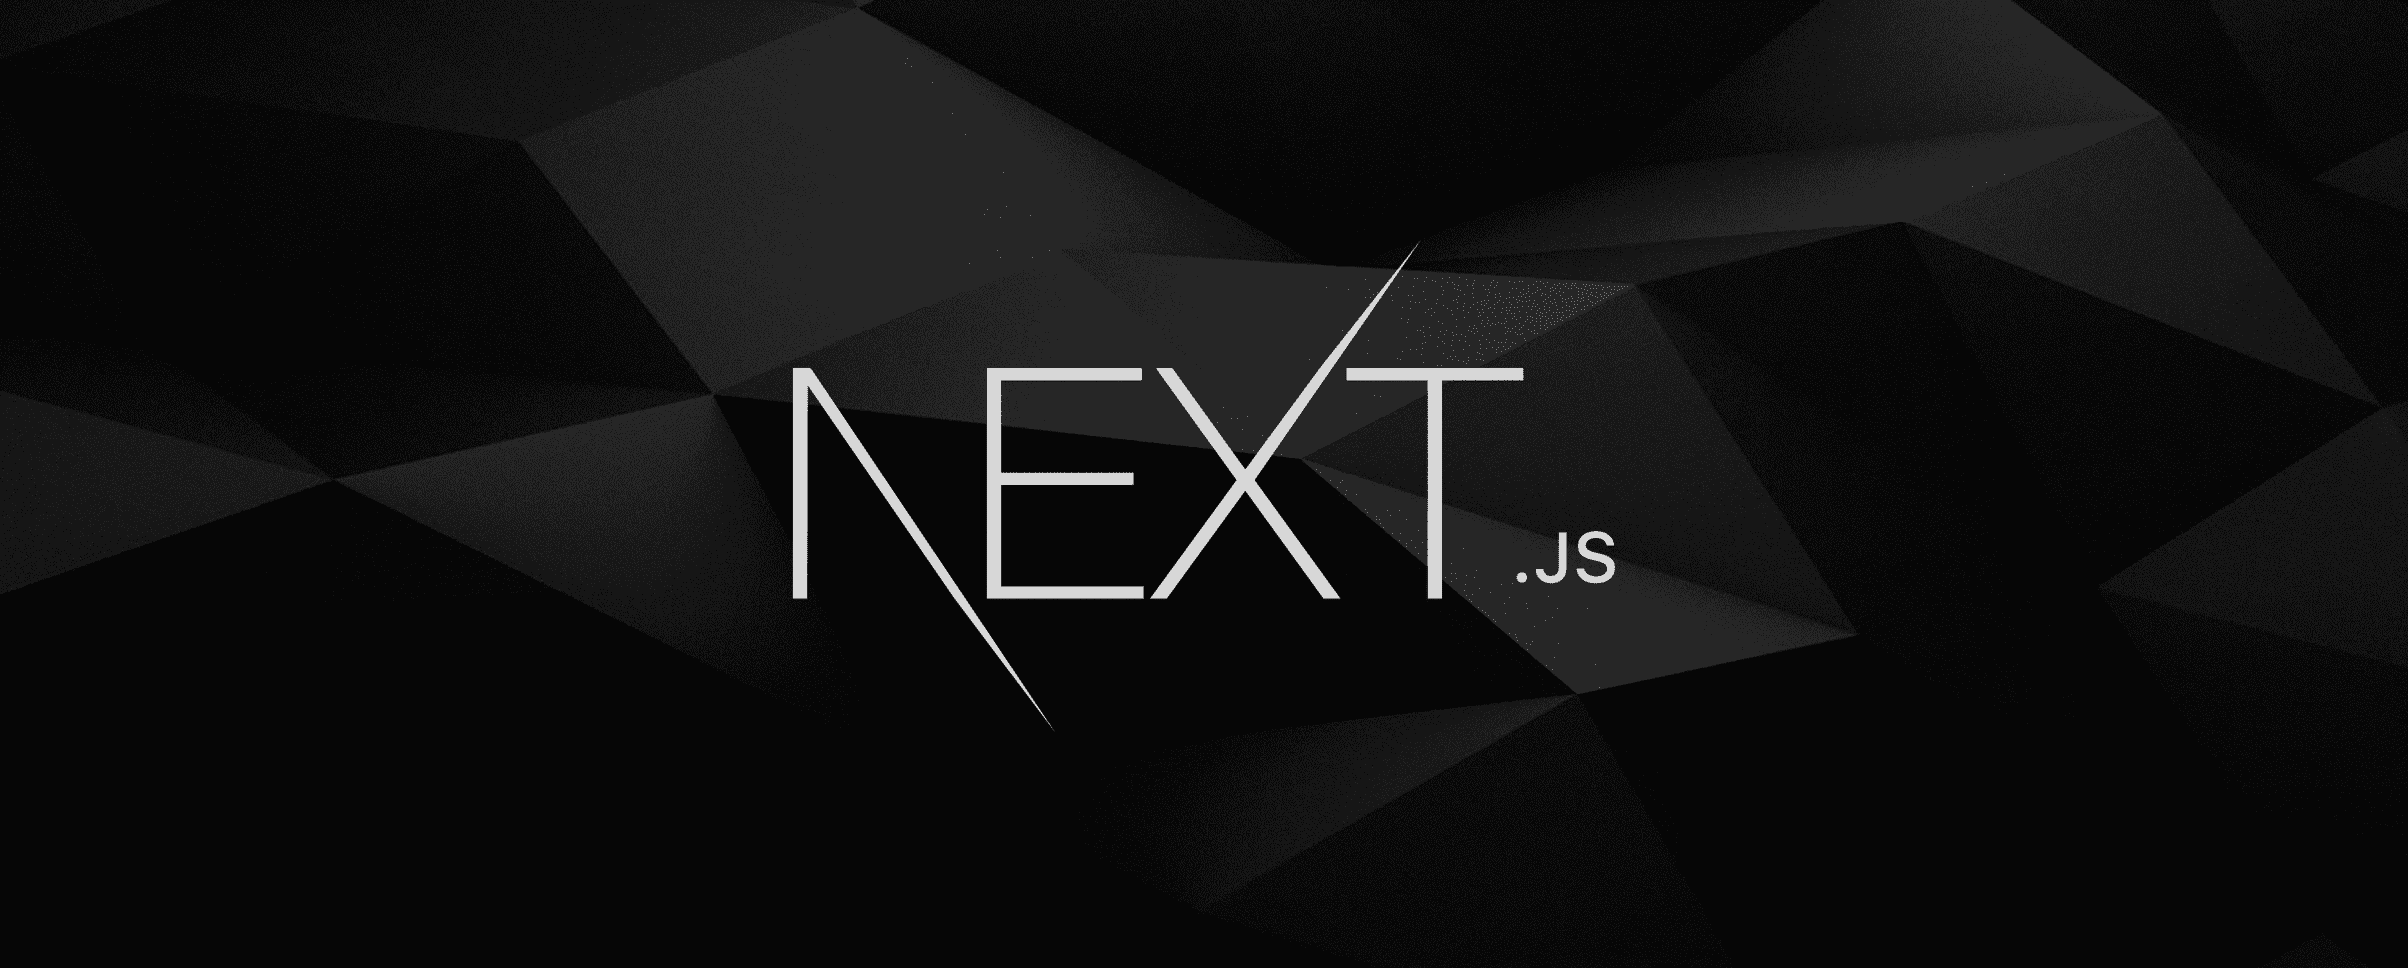 Next.js banner logo